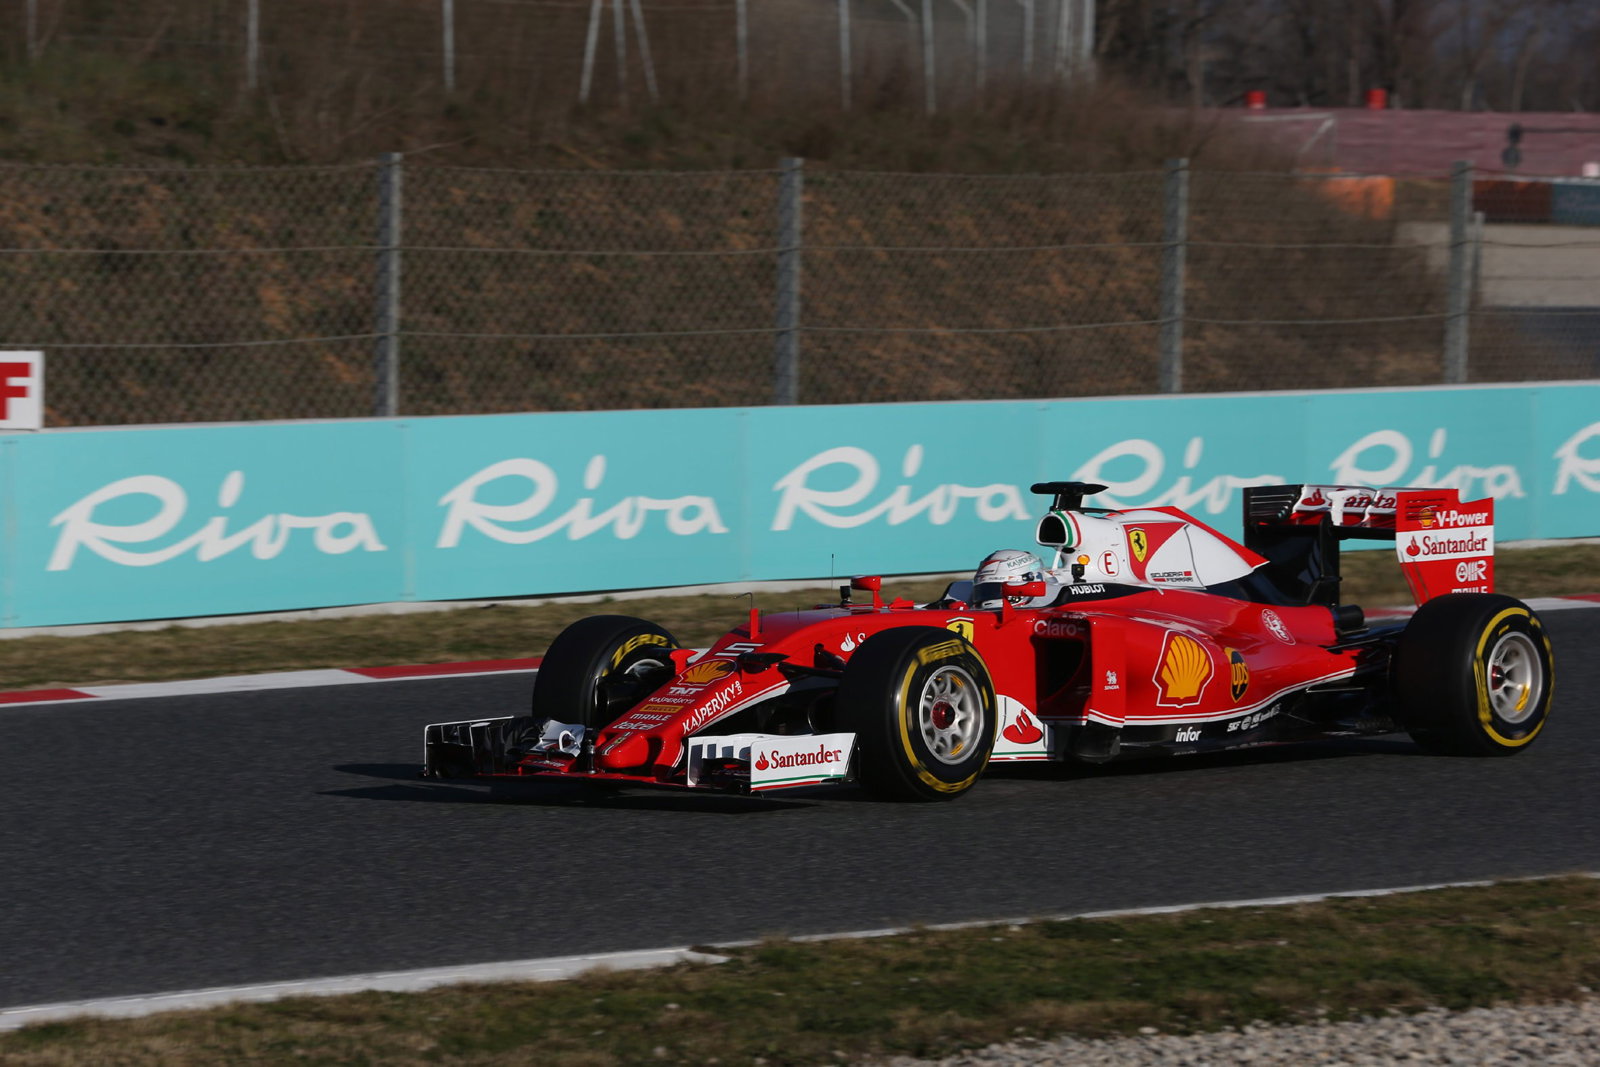 Riva renova a parceria com a Escuderia Ferrari - Ferretti Group